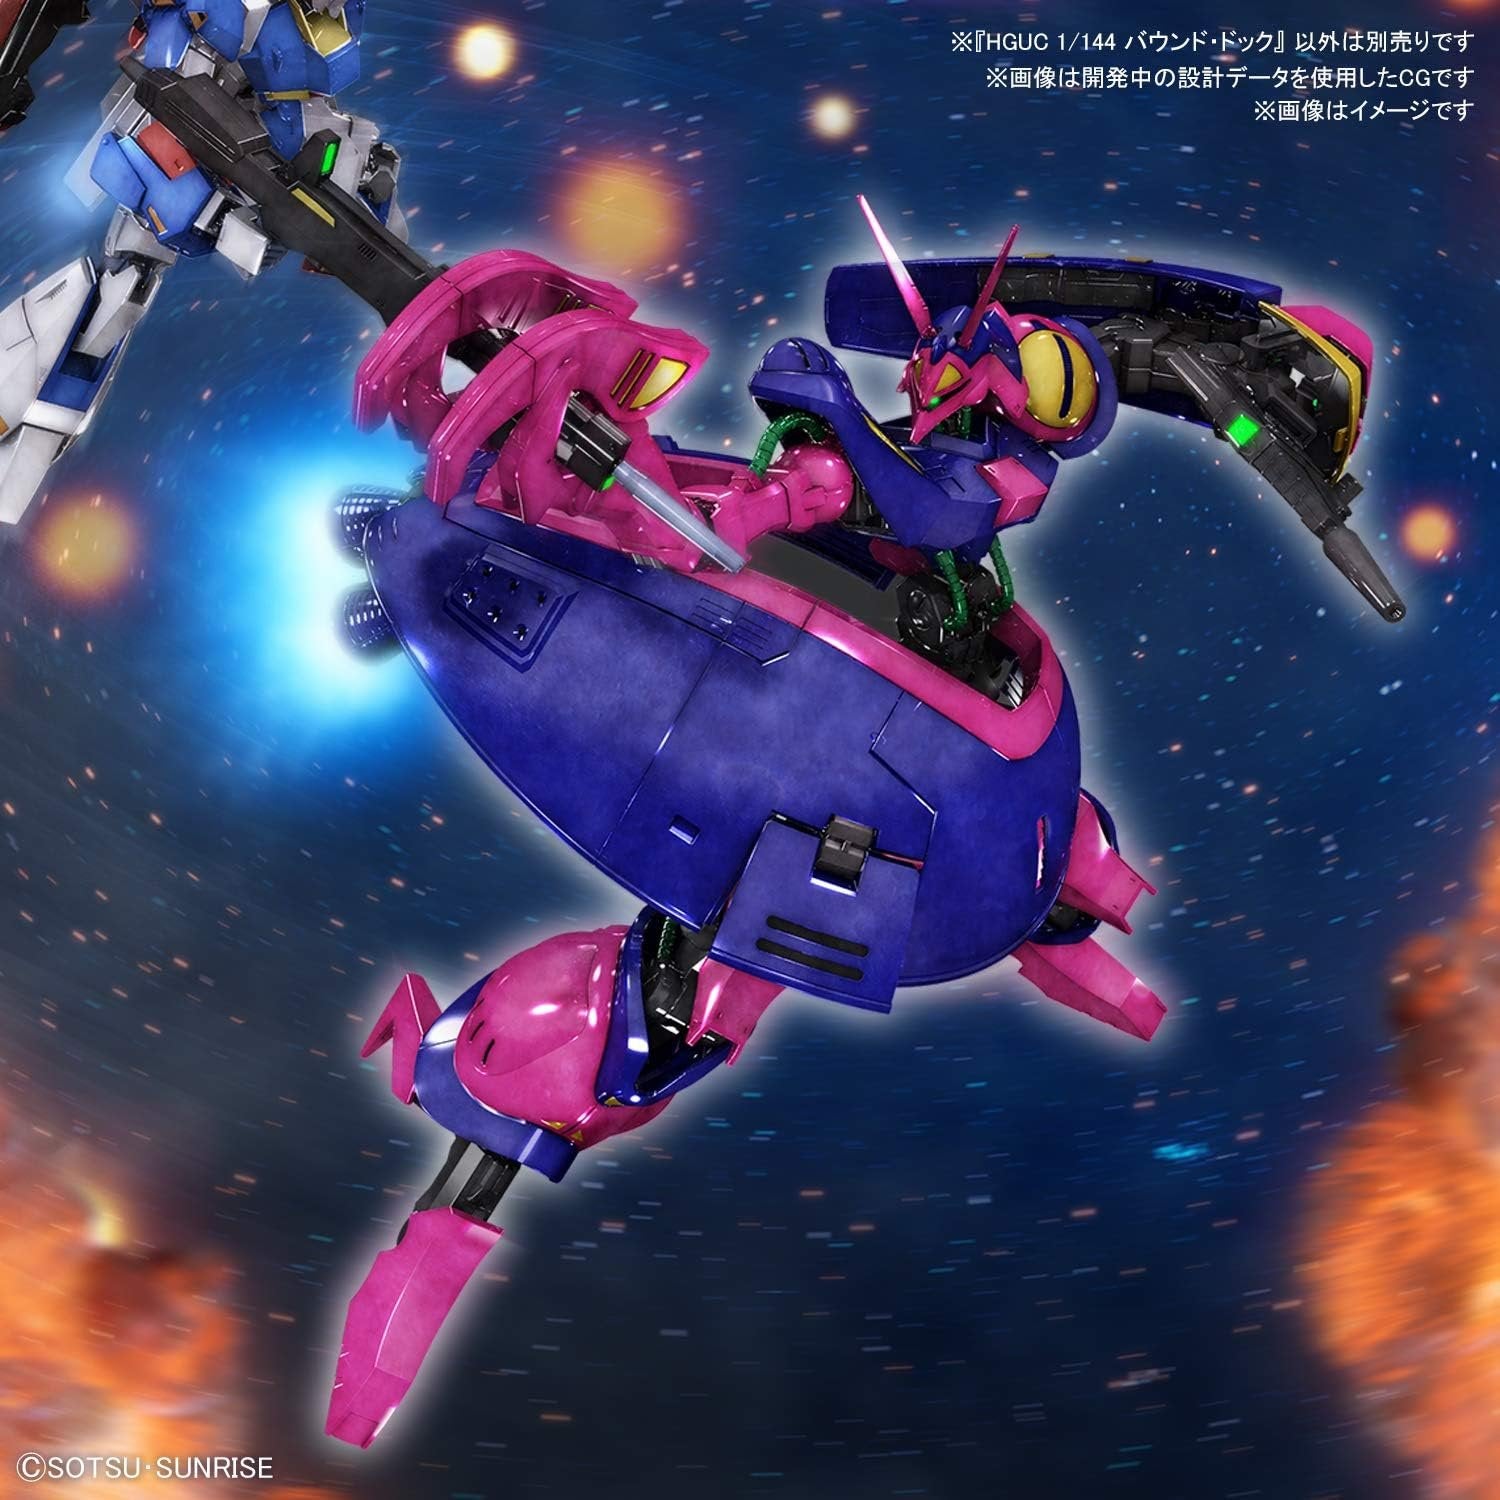 Bandai Hobby - Zeta Gundam - #235 Baund-Doc, Bandai Spirits HGUC 1/144